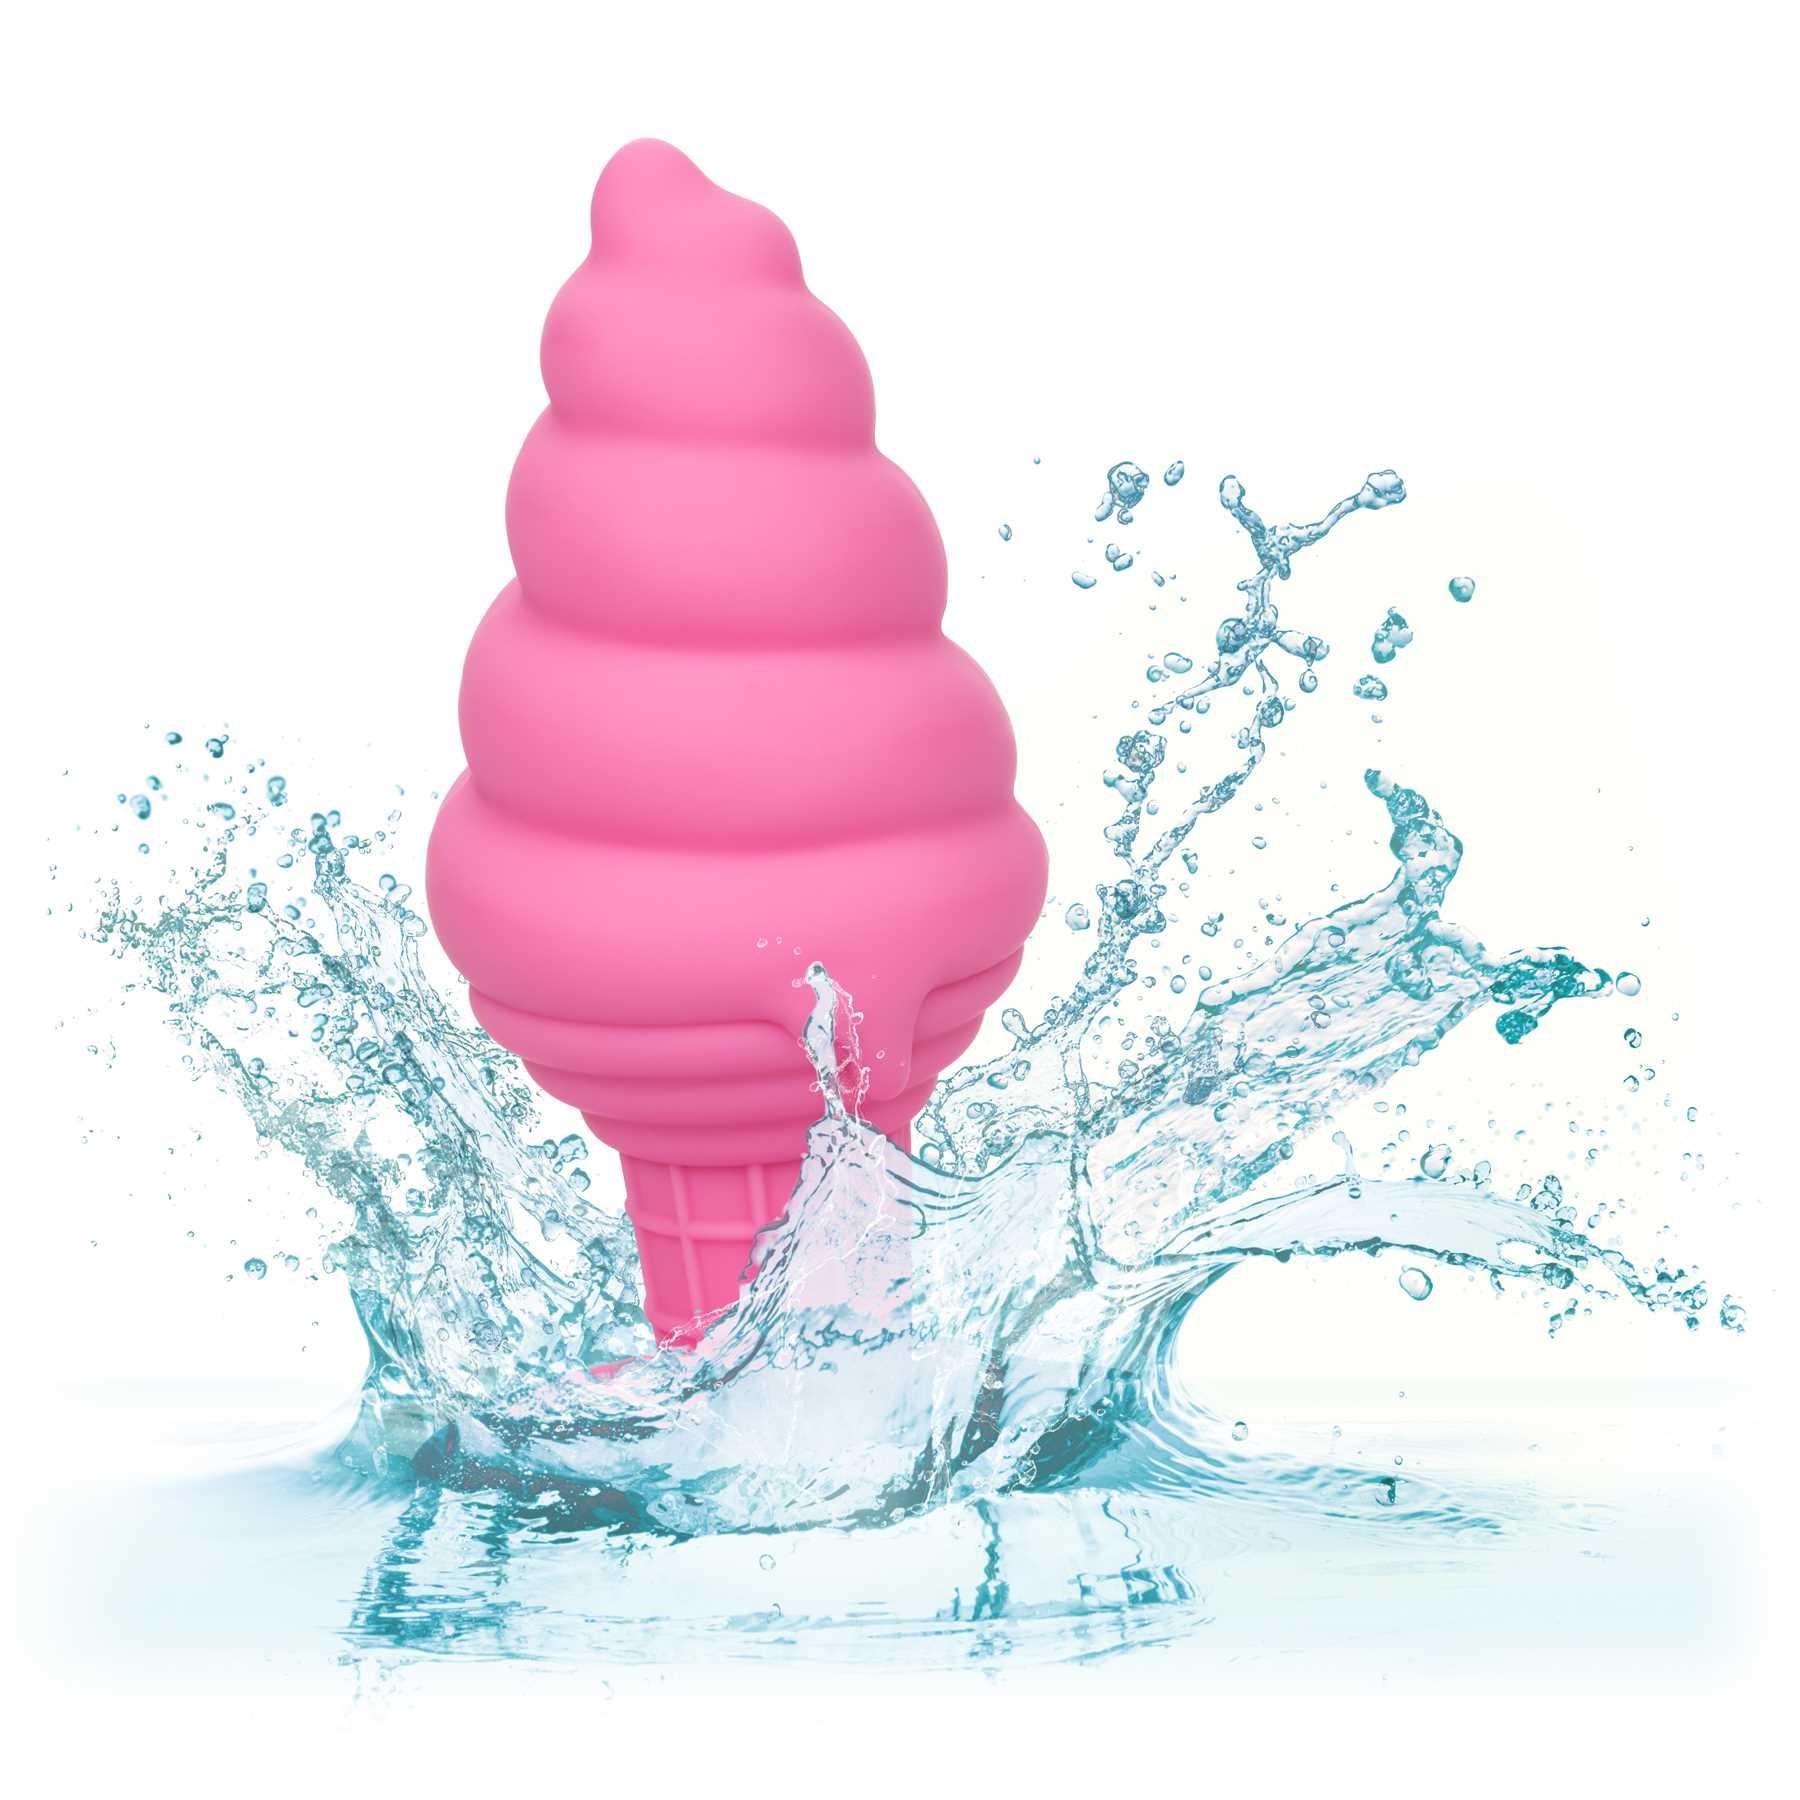 Naughty Bits Yum Bum Ice Cream Cone Butt Plug in water